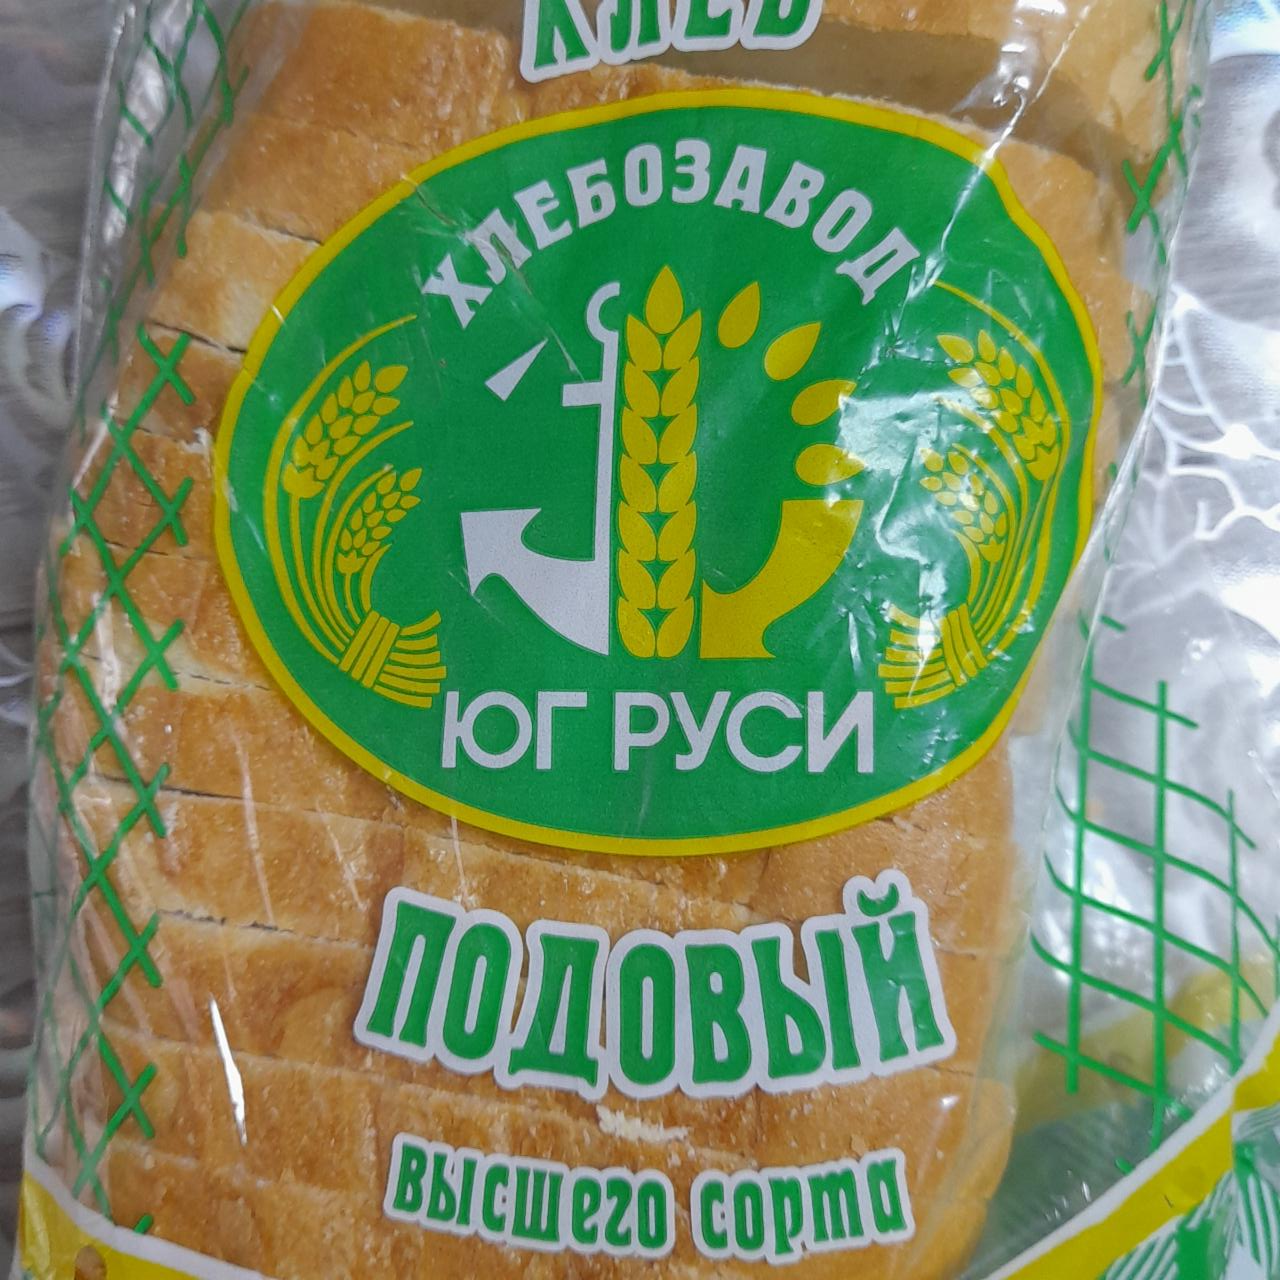 Фото - Хлеб подовый Хлебозавод Юг Руси